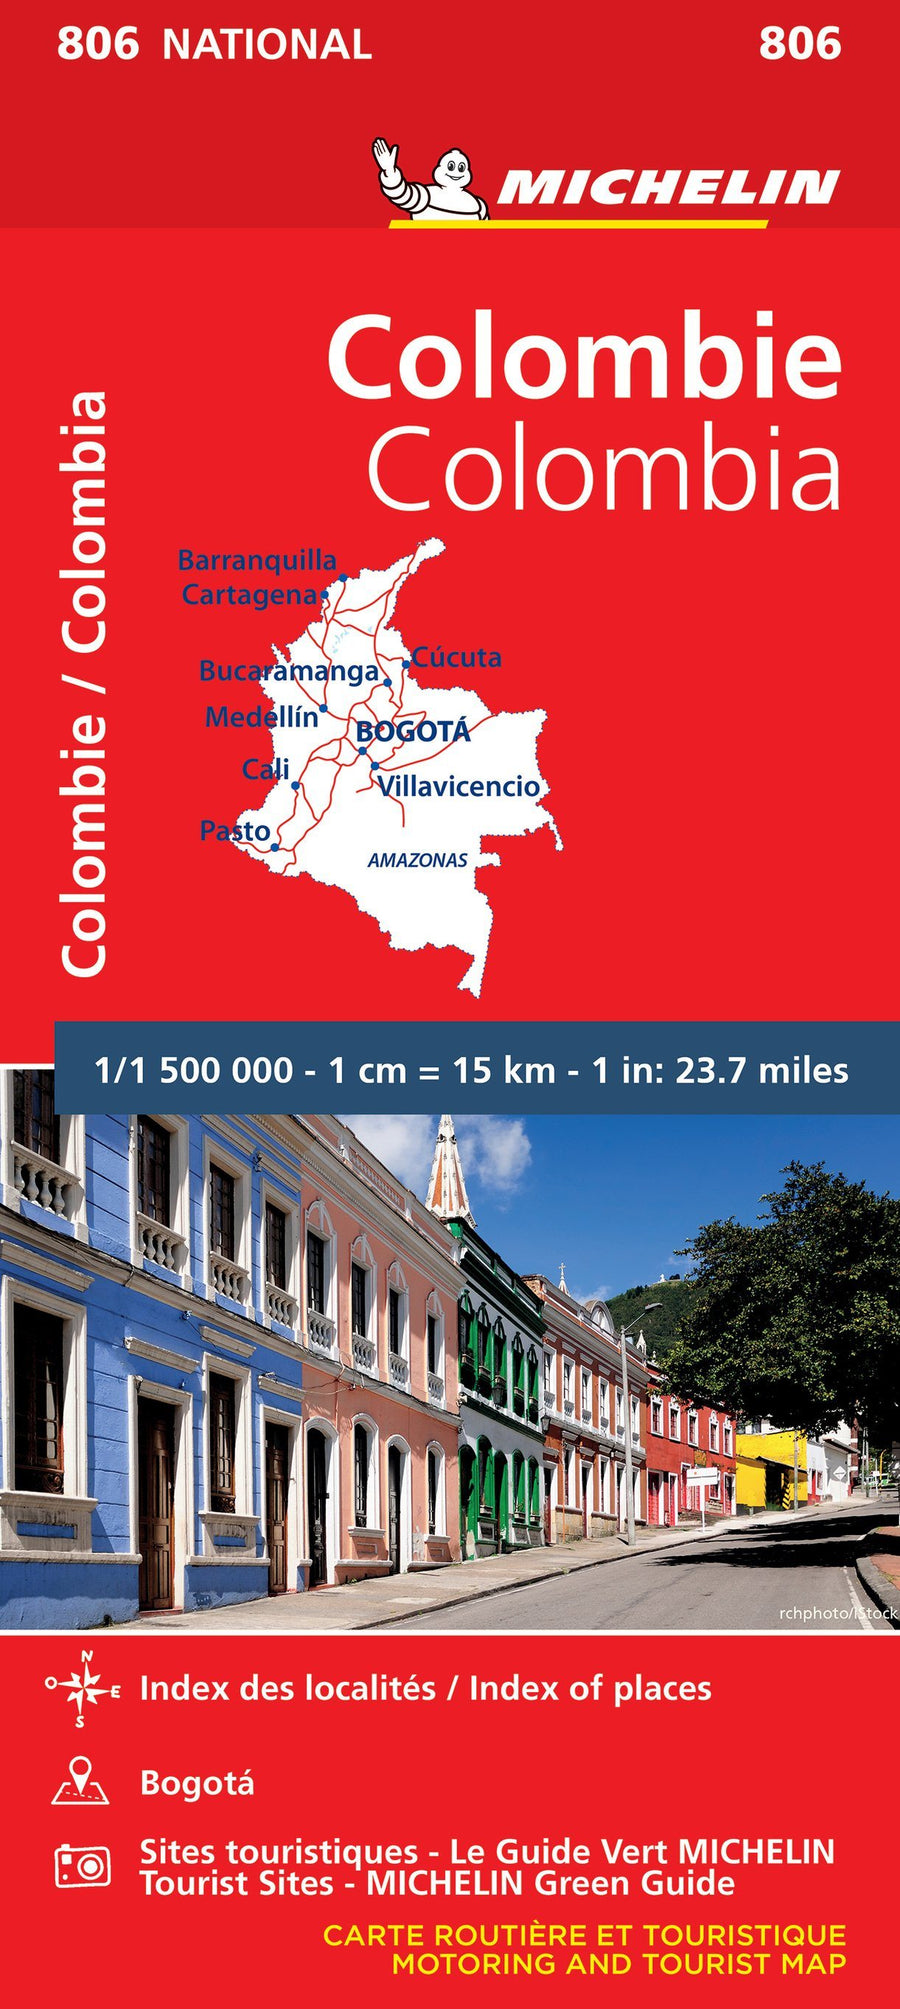 Carte routière n° 806 - Colombie | Michelin carte pliée Michelin 